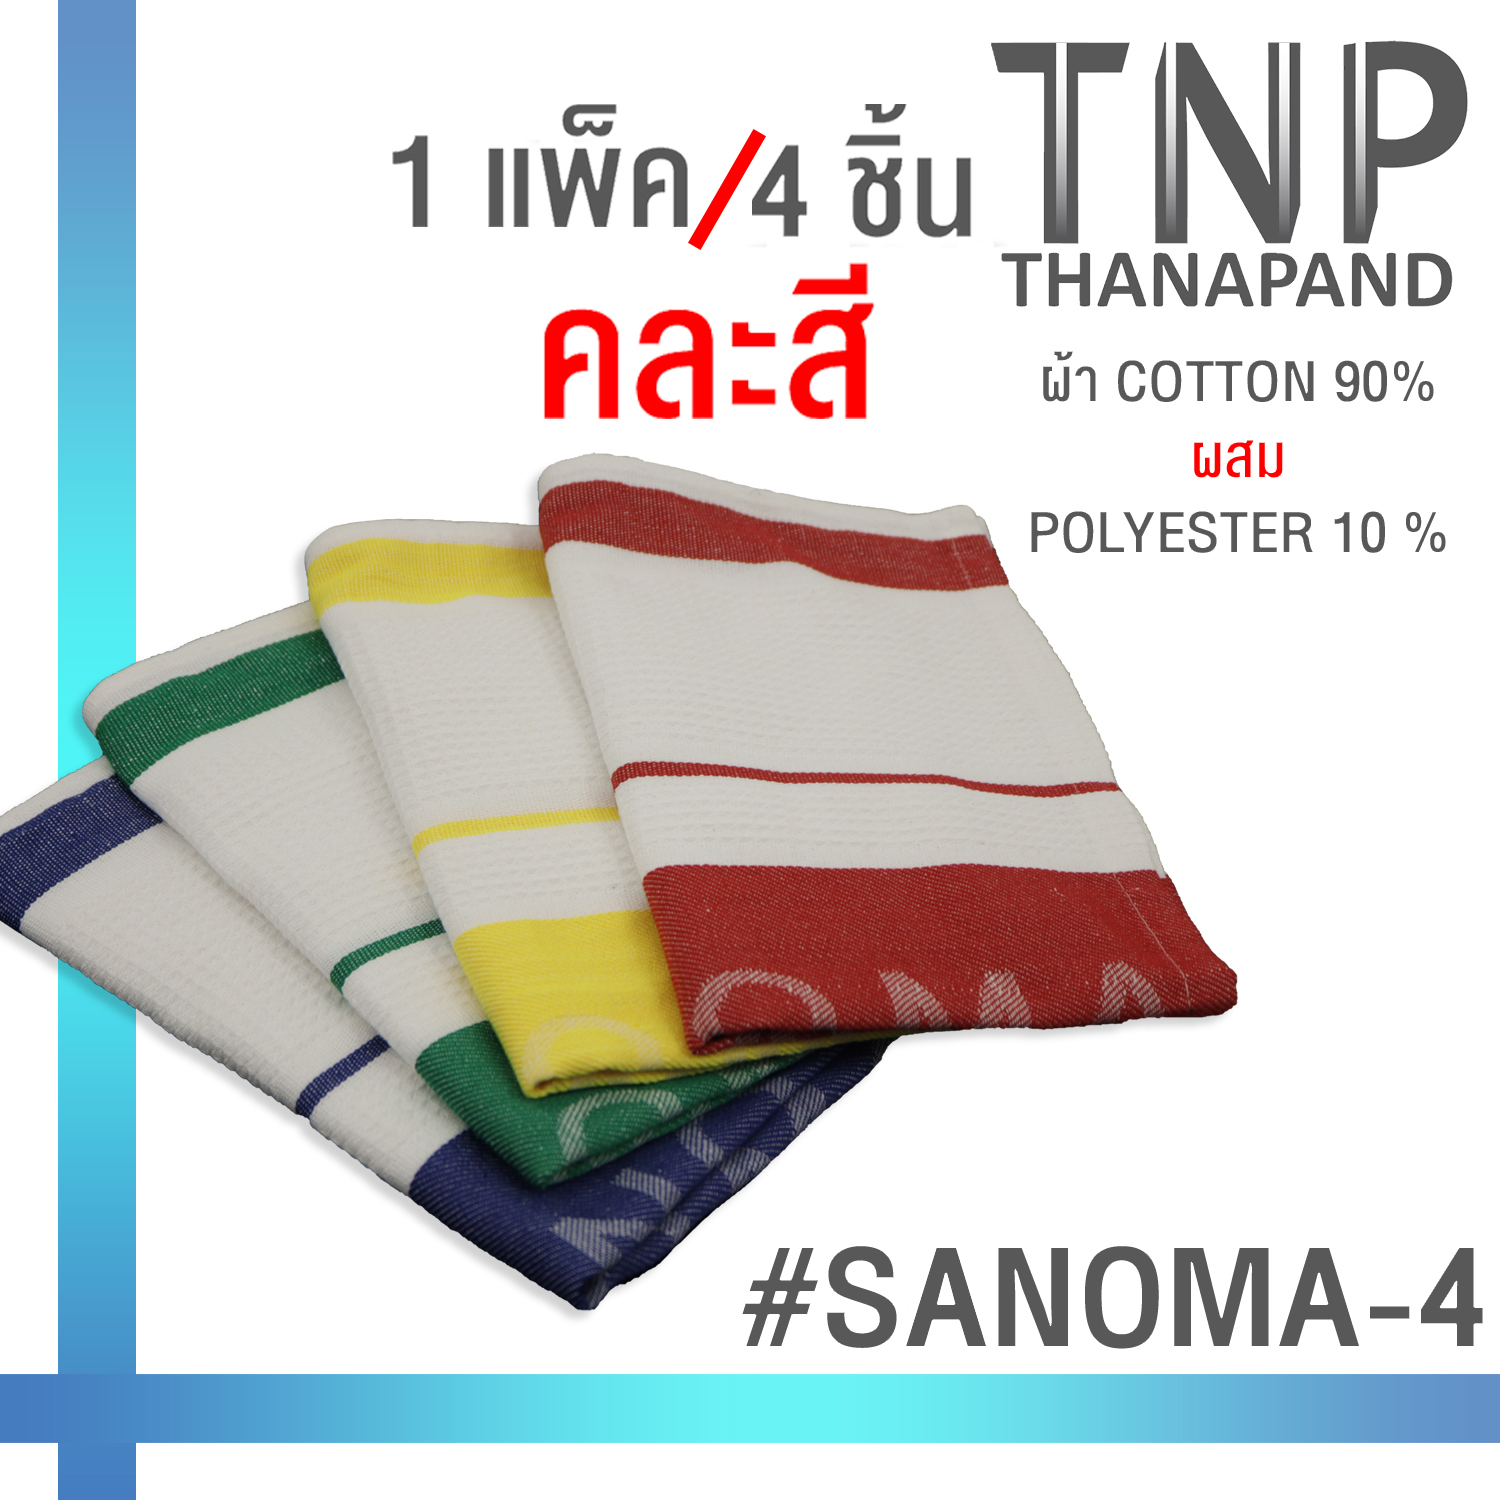 ผ้าเช็ดอเนกประสงค์ สี่เหลี่ยมผืนผ้า ขนาด 19.5 x 26 นิ้ว พร้อมส่งสีเหลือง/สีแดง รหัสสินค้า : SANOMA-4